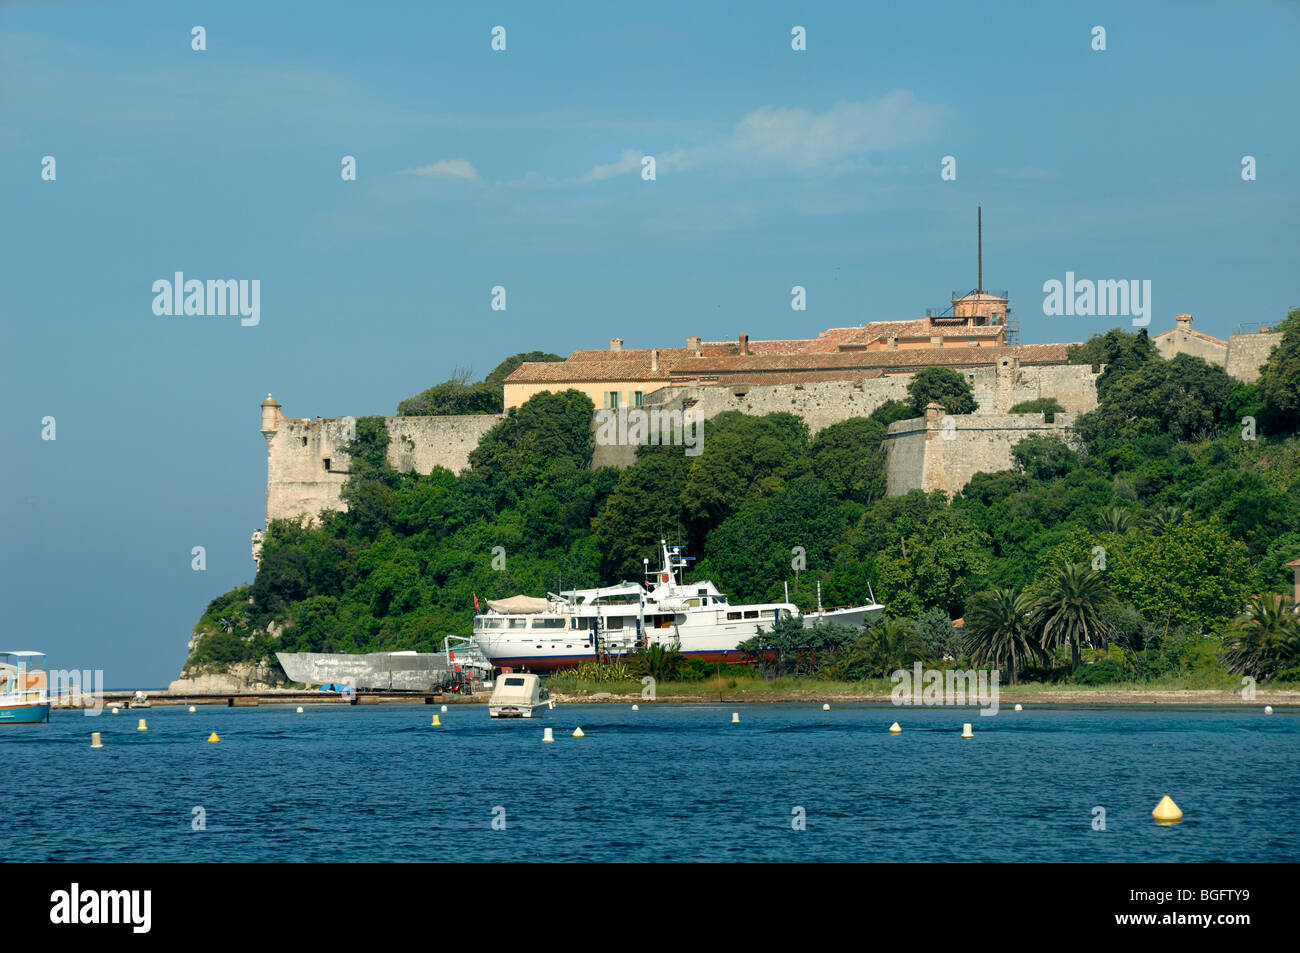 Fort Royal, l'Île Sainte Marguerite Island, îles de Lérins, Cannes, Alpes-Maritimes, Provence-Alpes-Côte-d'Azur, France Banque D'Images